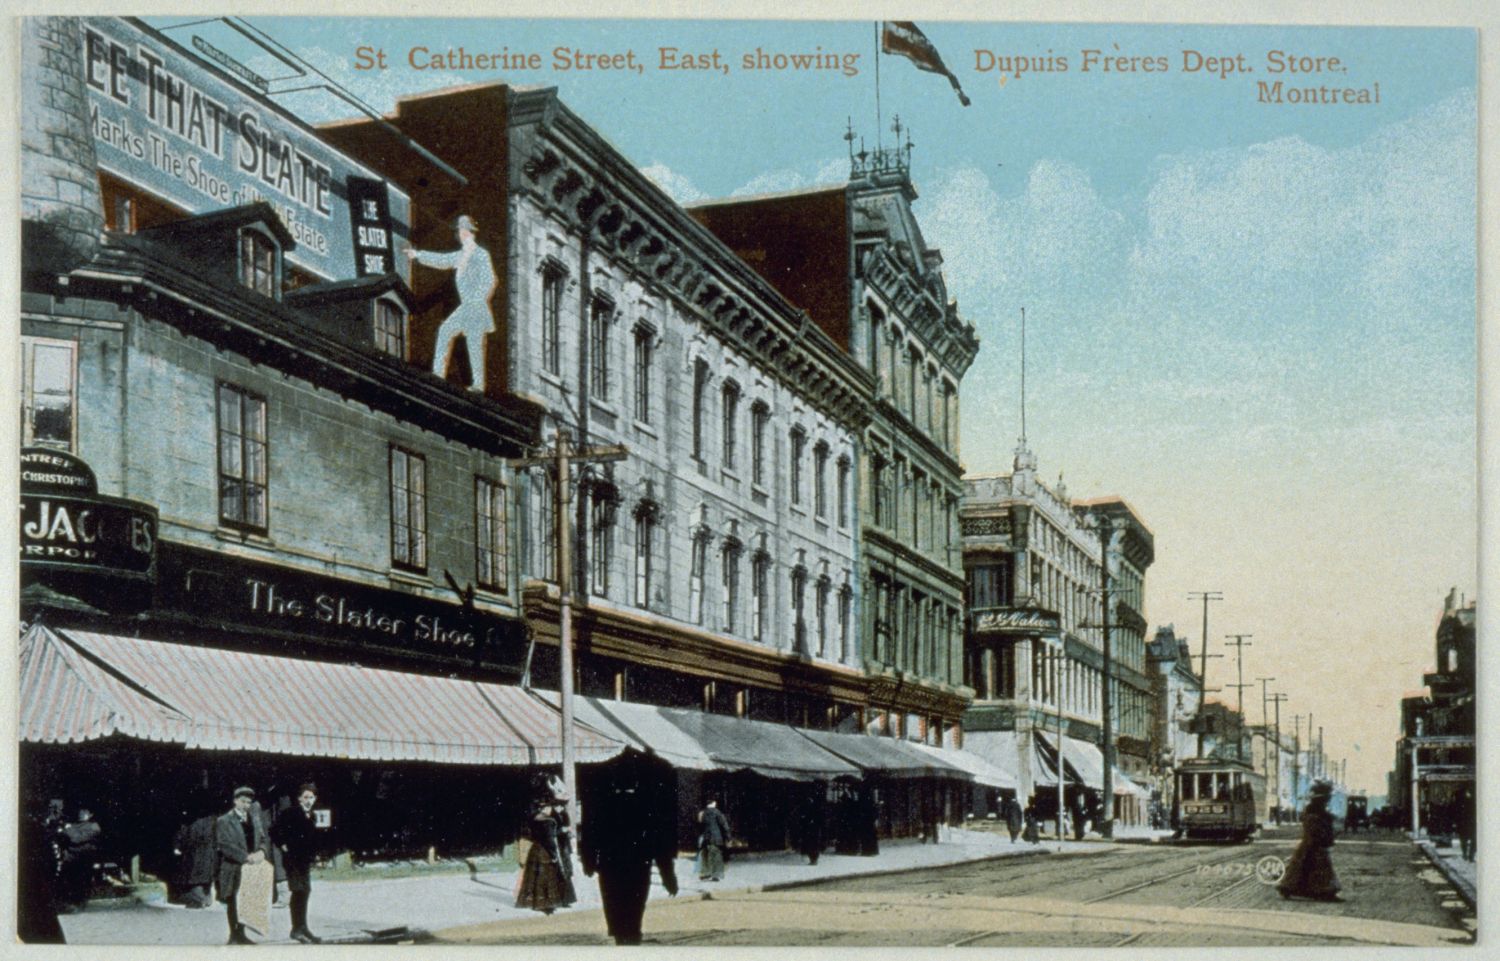 Carte postale colorisée montrant la rue Sainte-Catherine et les façades de magasins côté nord.